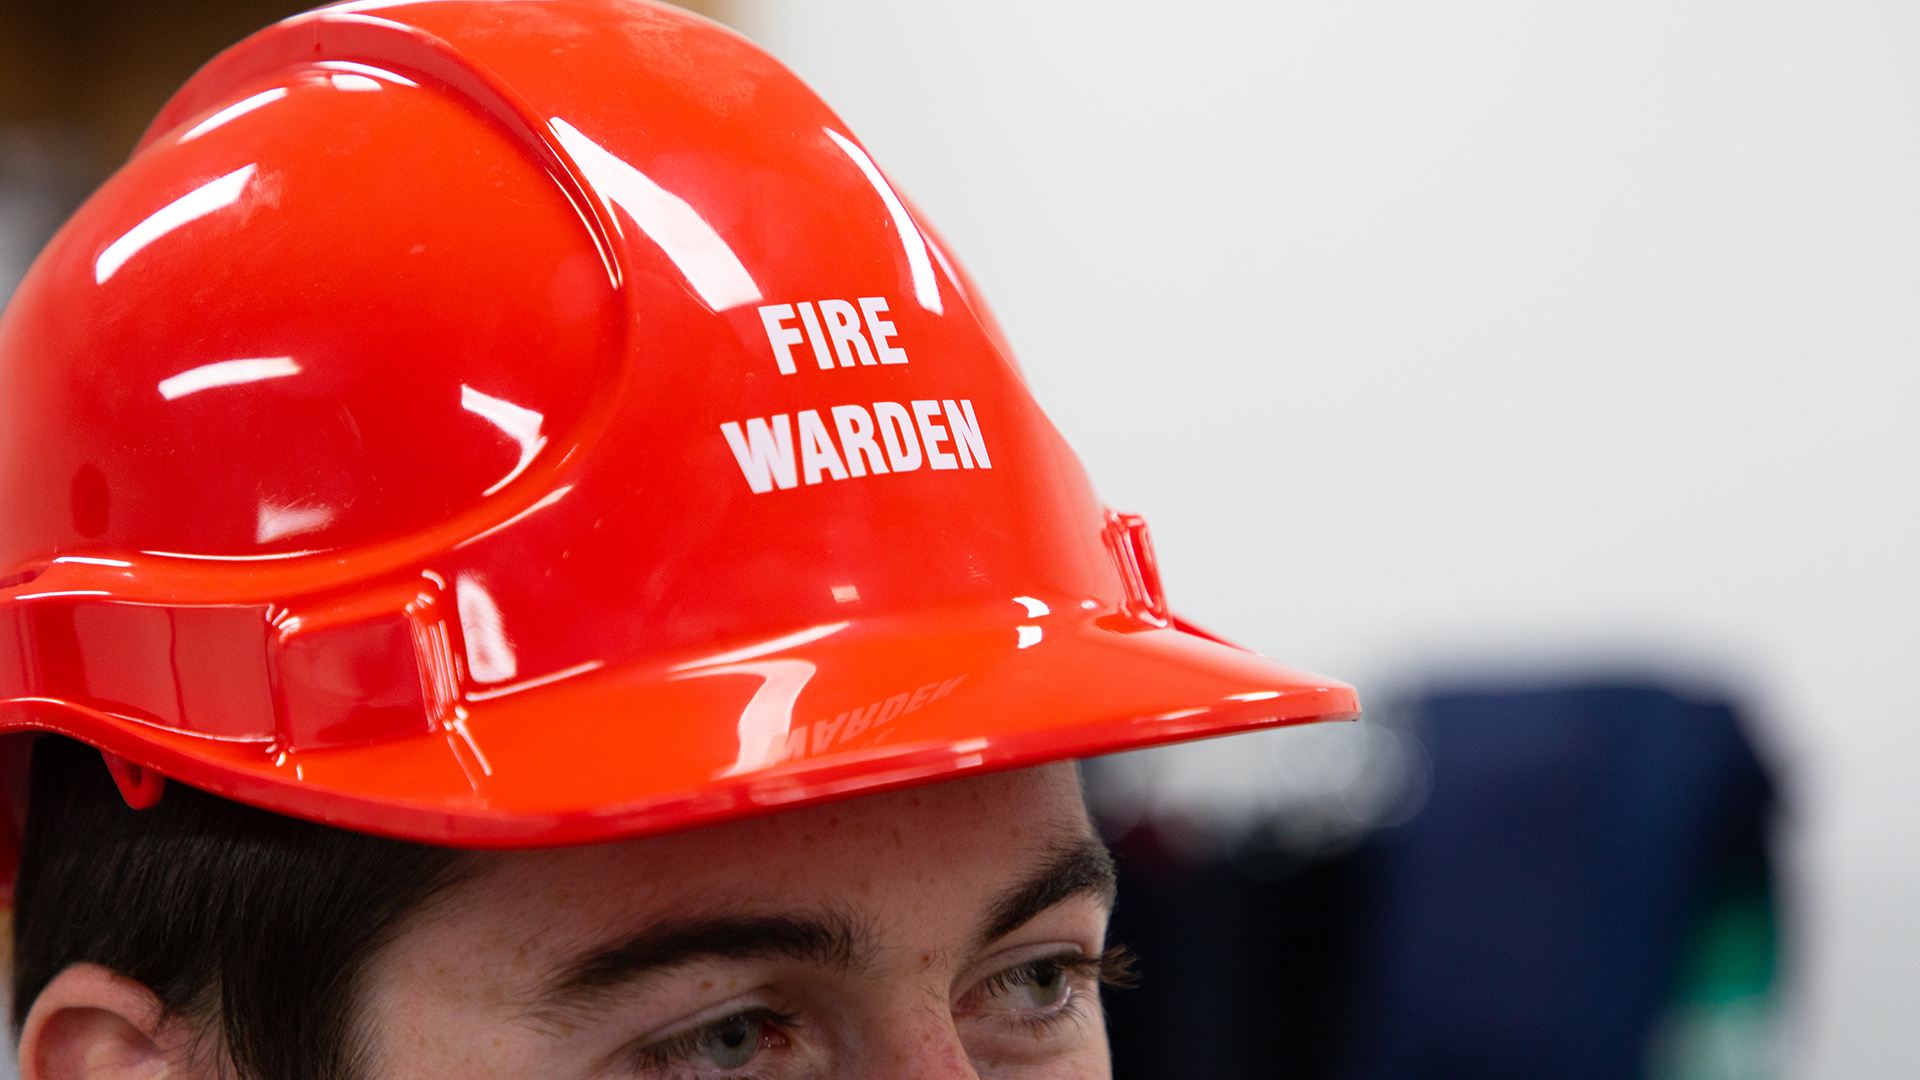 Fire warden hat.